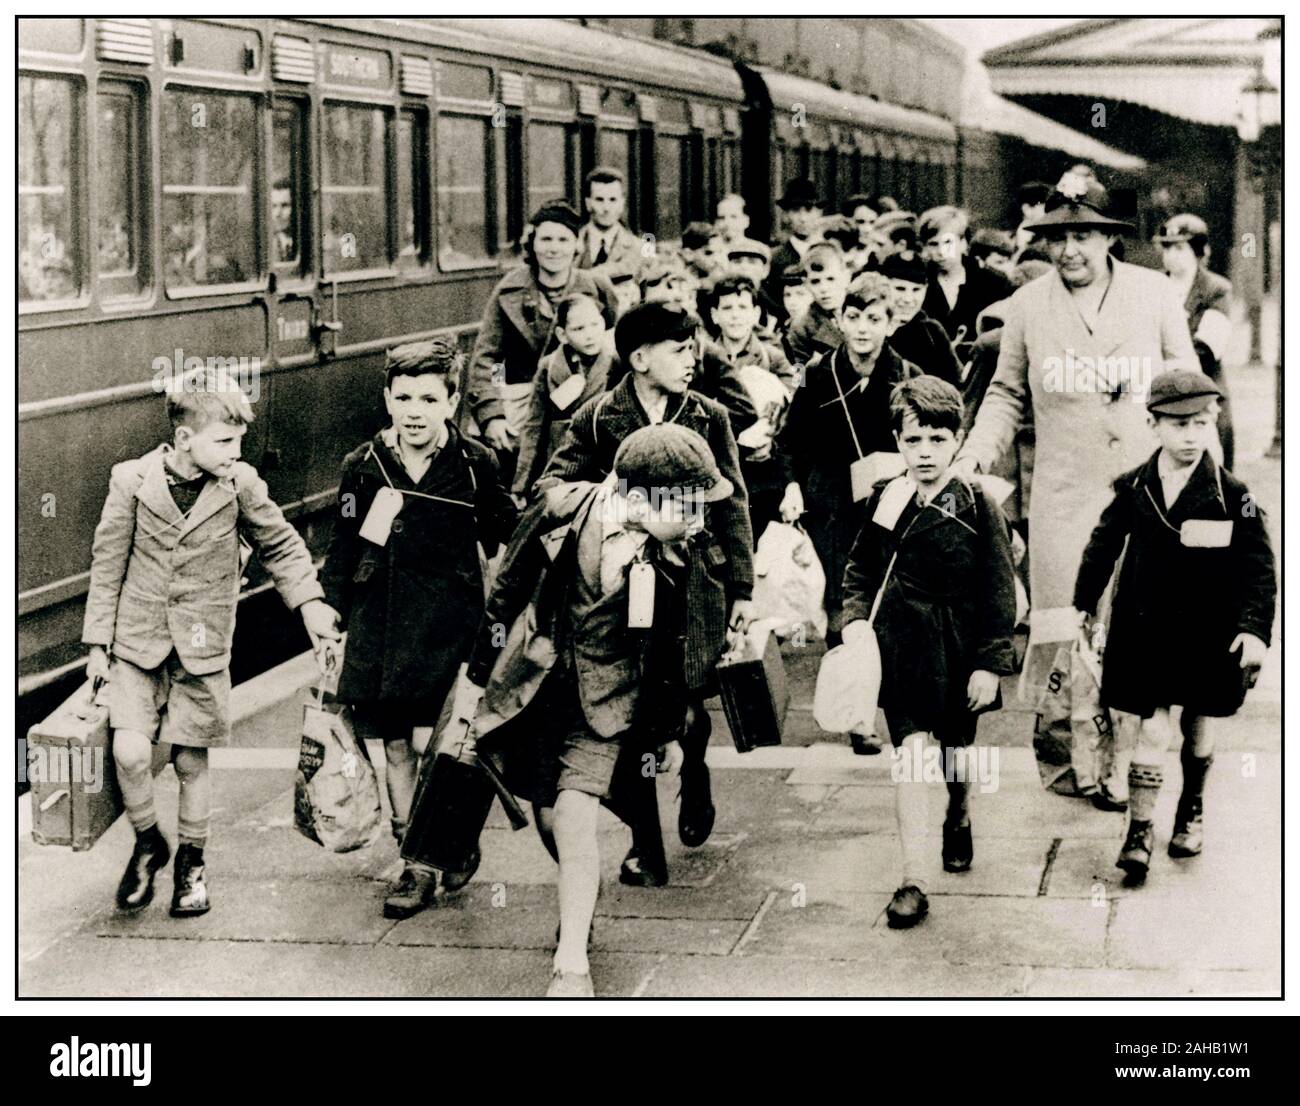 Blitz II. Weltkrieg WW2 Kinder evakuieren mit Koffern mit Namensschildern am Bahnhof Moor Street, Birmingham, und fahren in ländliche Unterkünfte, um die Bombardierung britischer Städte durch Nazideutschland zu vermeiden September 1939. Kinder der Kriegsevakuierung, Millionen von britischen Stadtkindern wurden während des Zweiten Weltkriegs an sicherere Orte evakuiert. WW2 Stockfoto